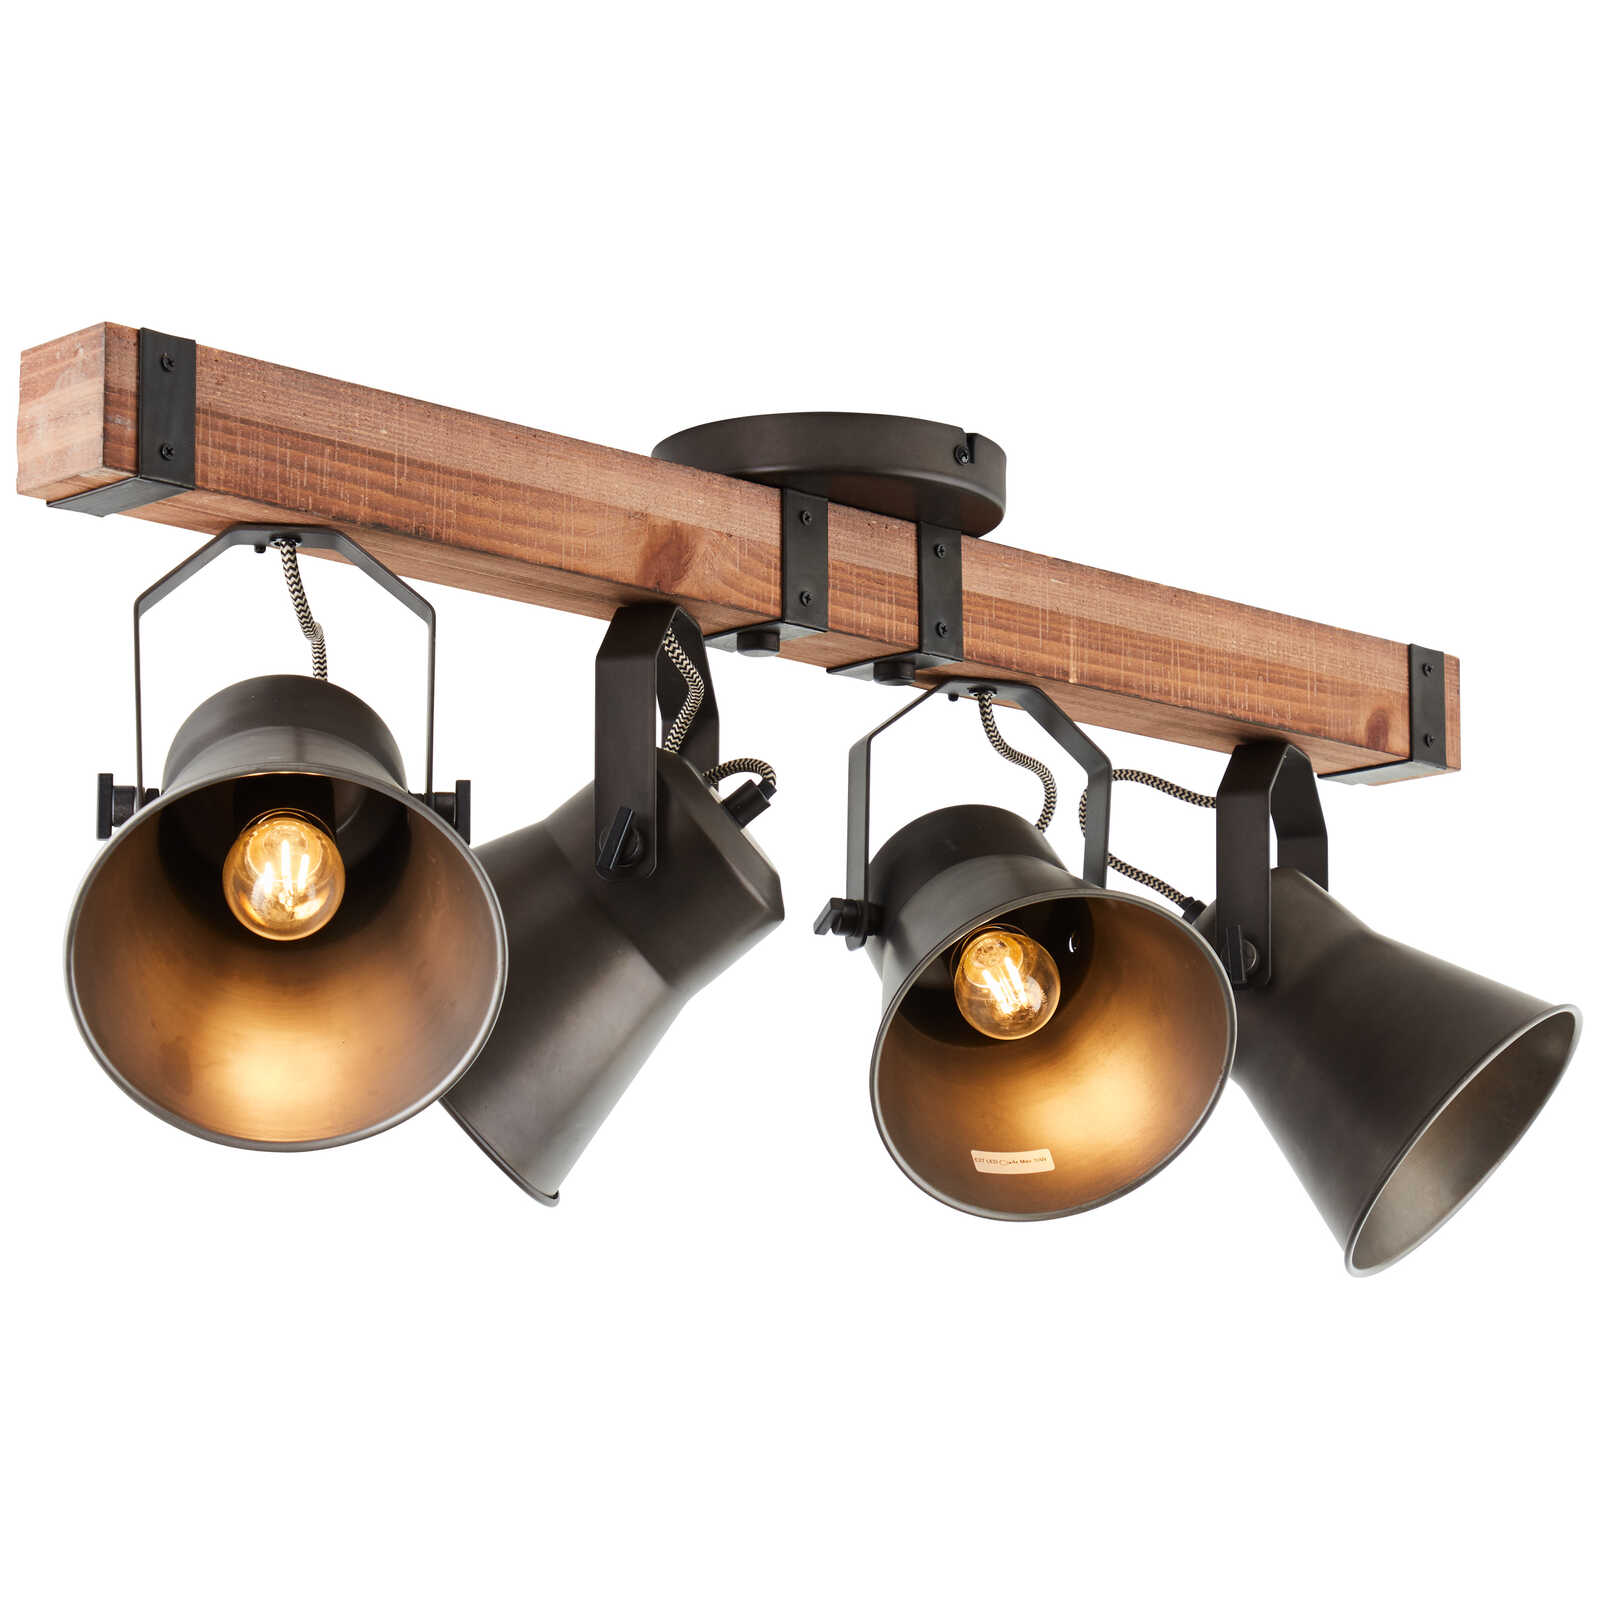             Wooden spotlight bar - Eva 3 - Metallic
        